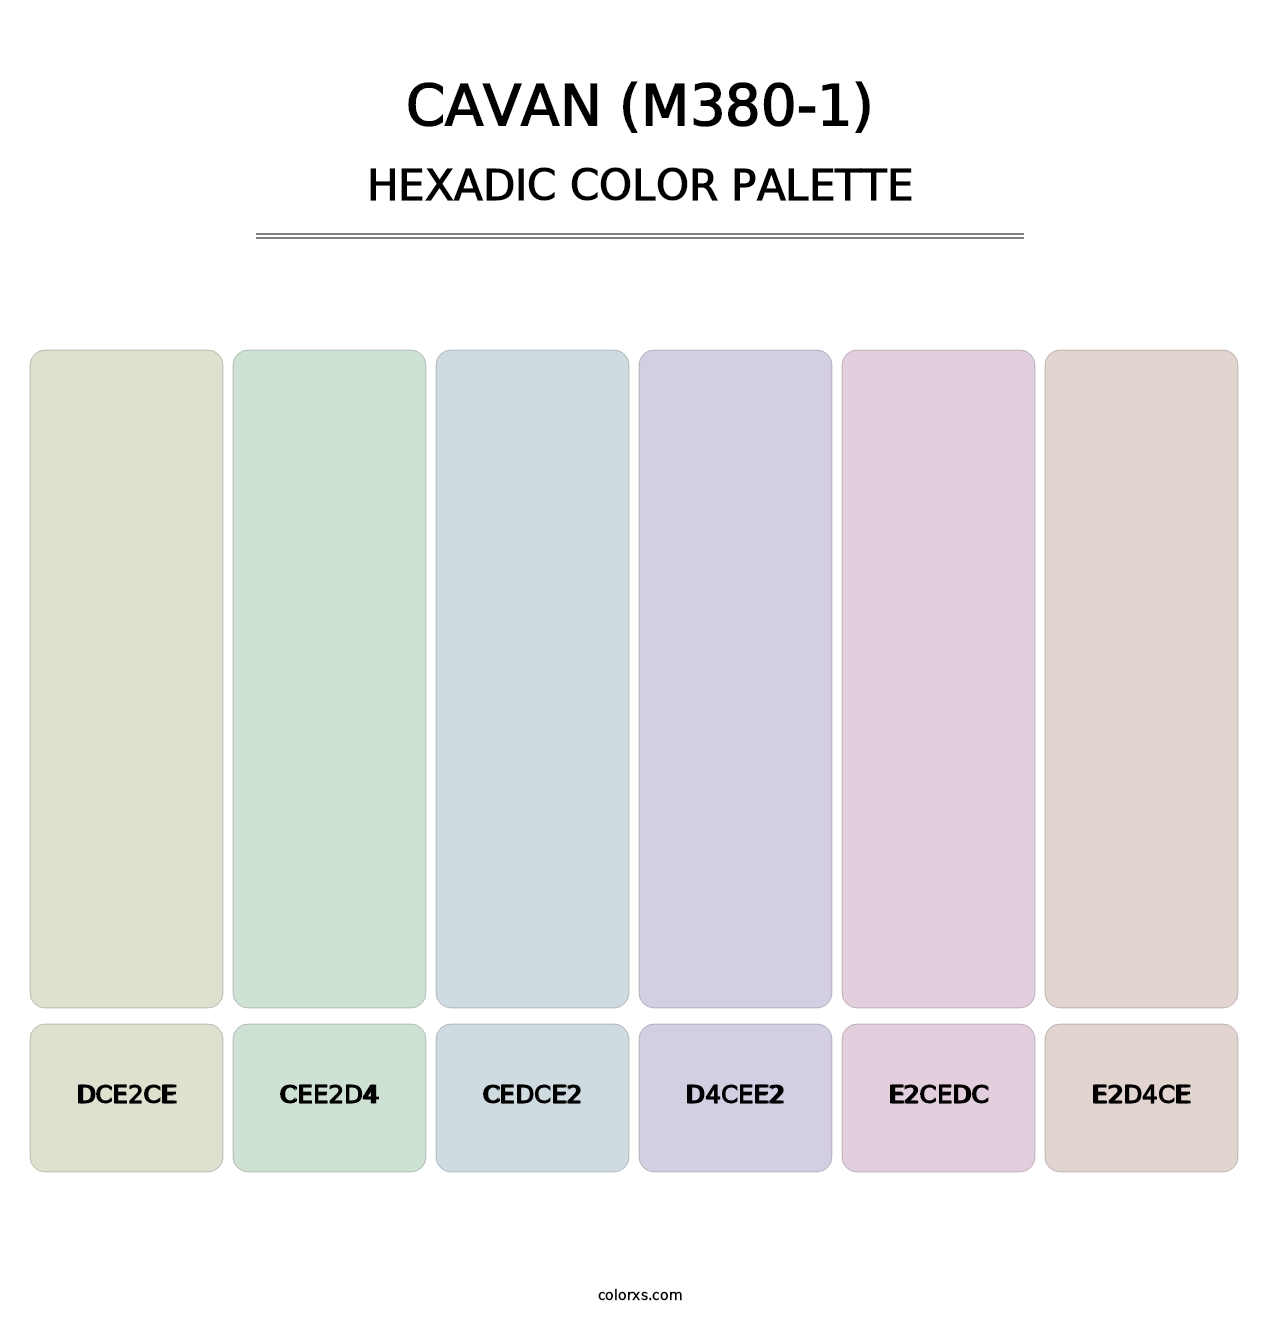 Cavan (M380-1) - Hexadic Color Palette